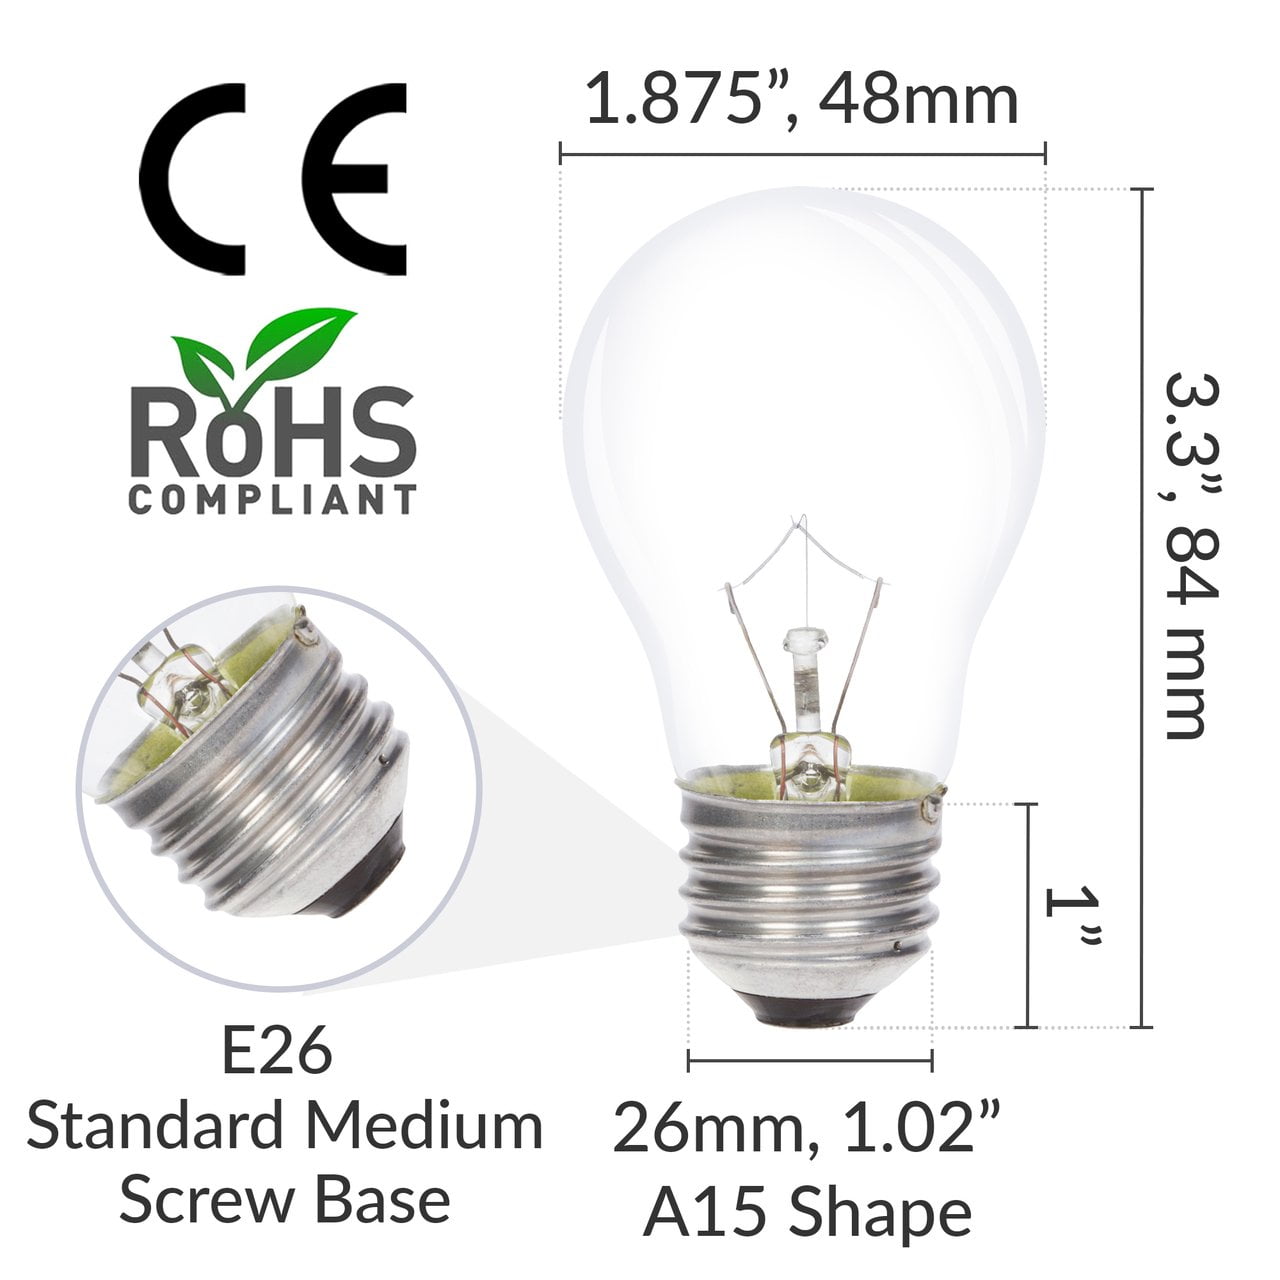 Sunbeam - Ampoule pour appareil électroménager A15, 40W. Size: 40w, Fr